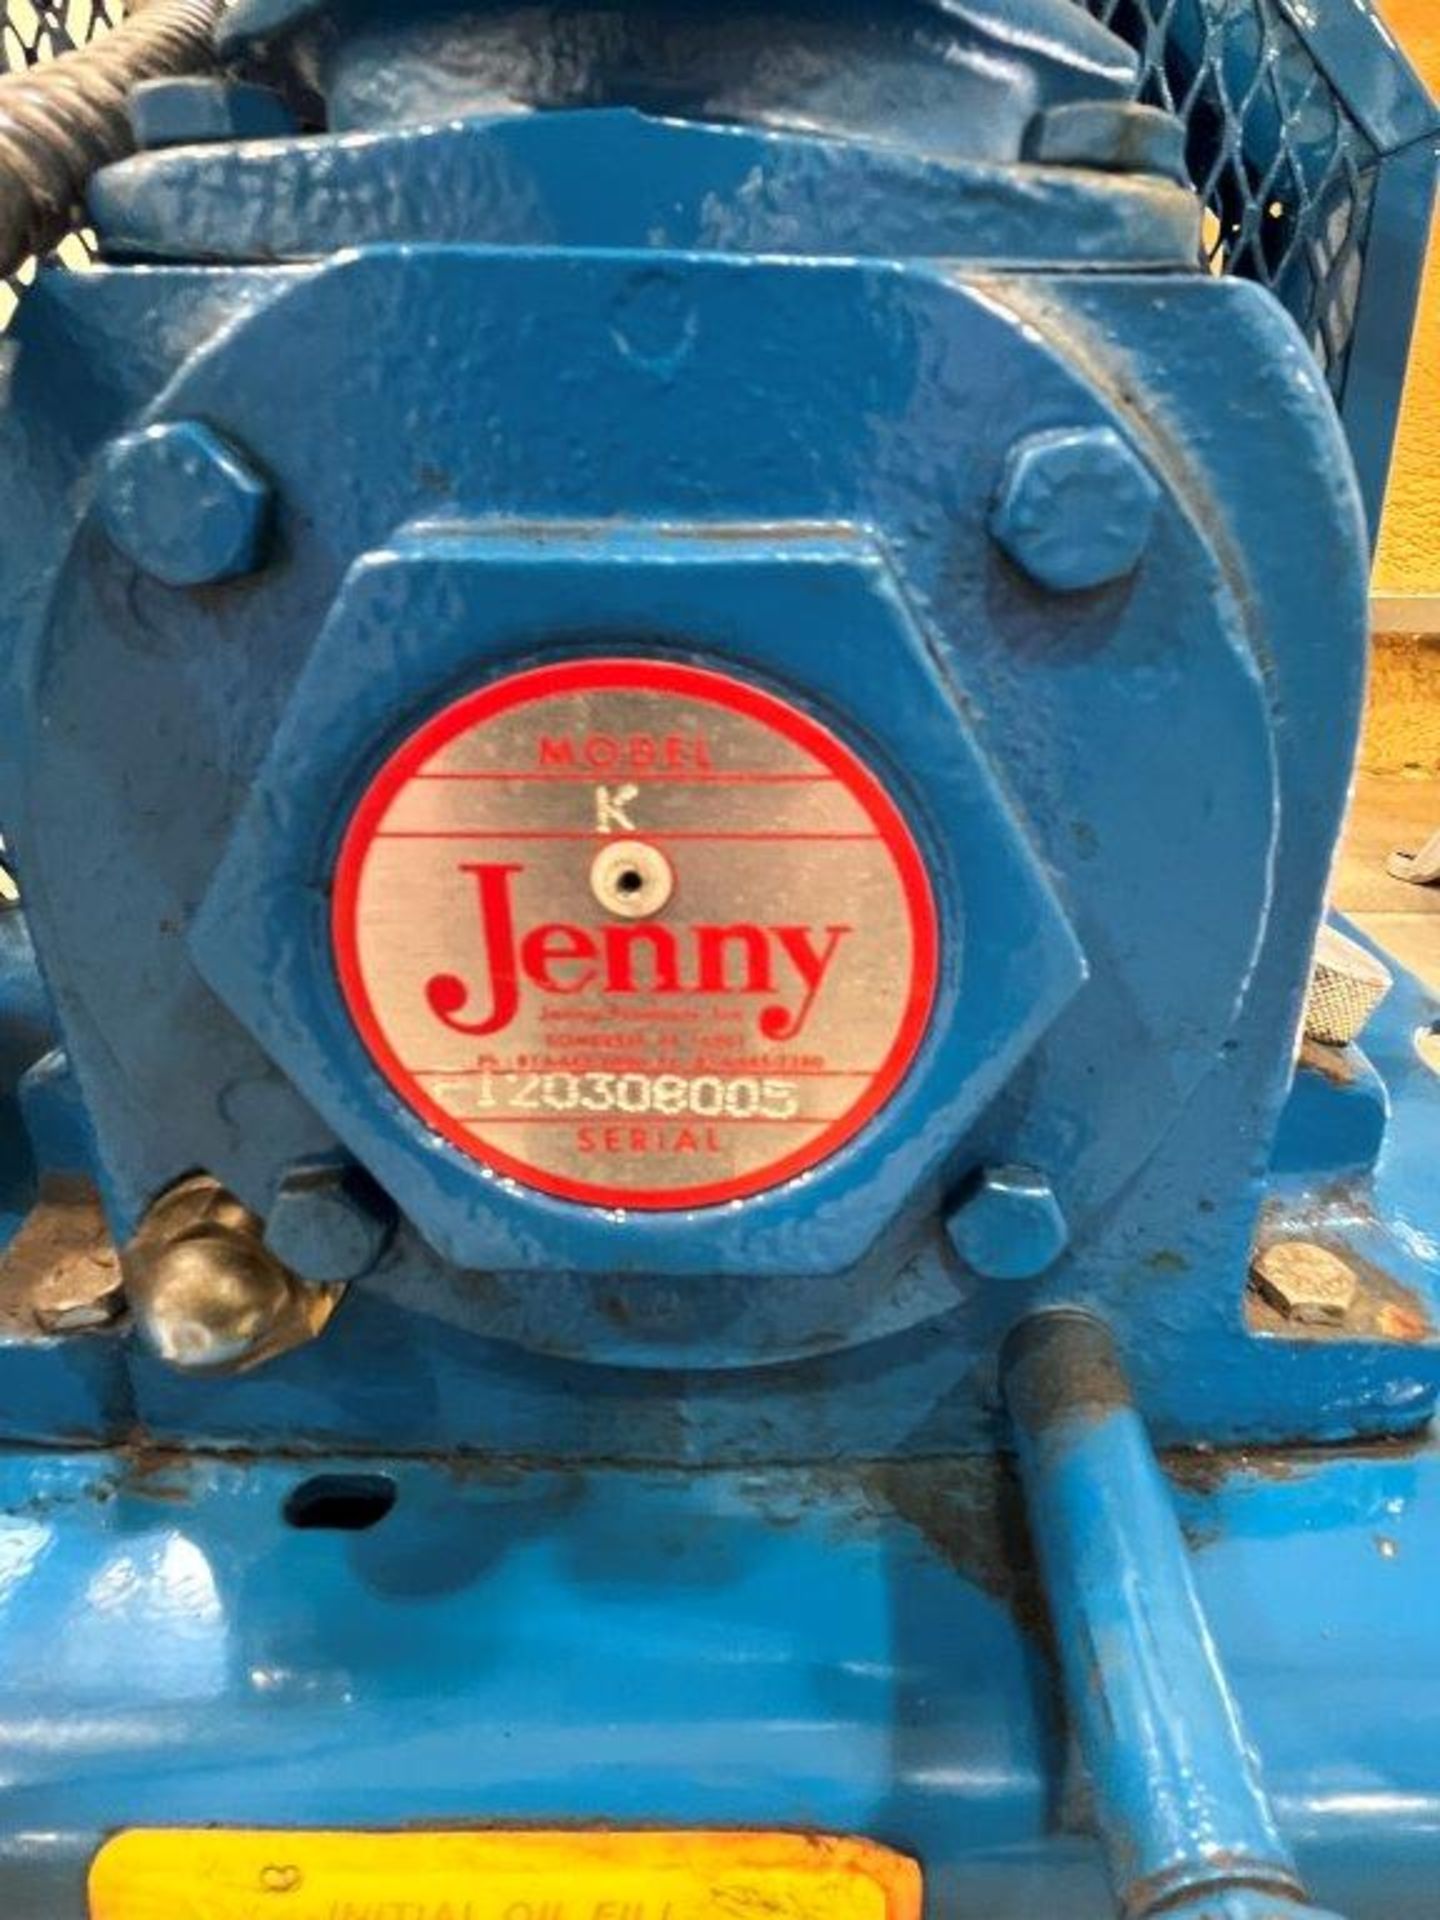 Jenny Model K Air Compressor - Image 2 of 2